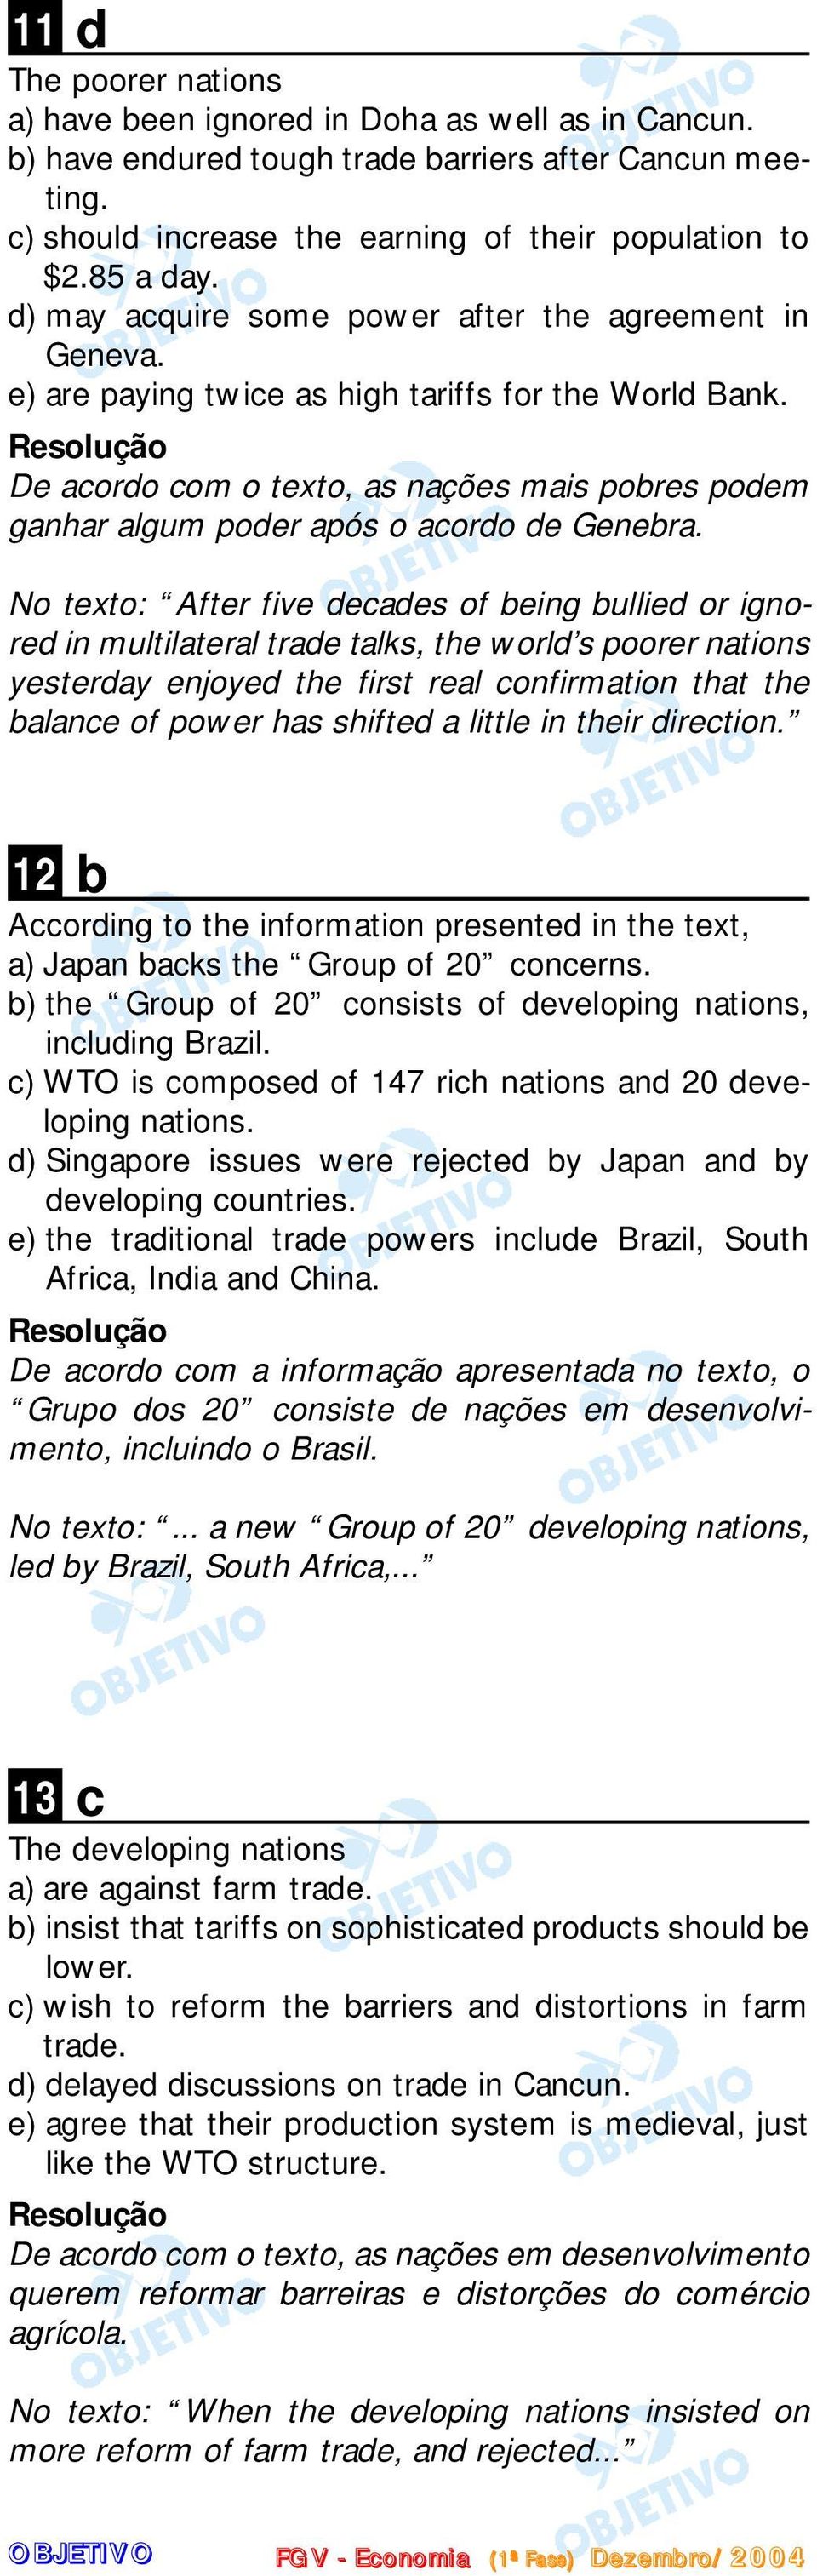 De acordo com o texto, as nações mais pobres podem ganhar algum poder após o acordo de Genebra.